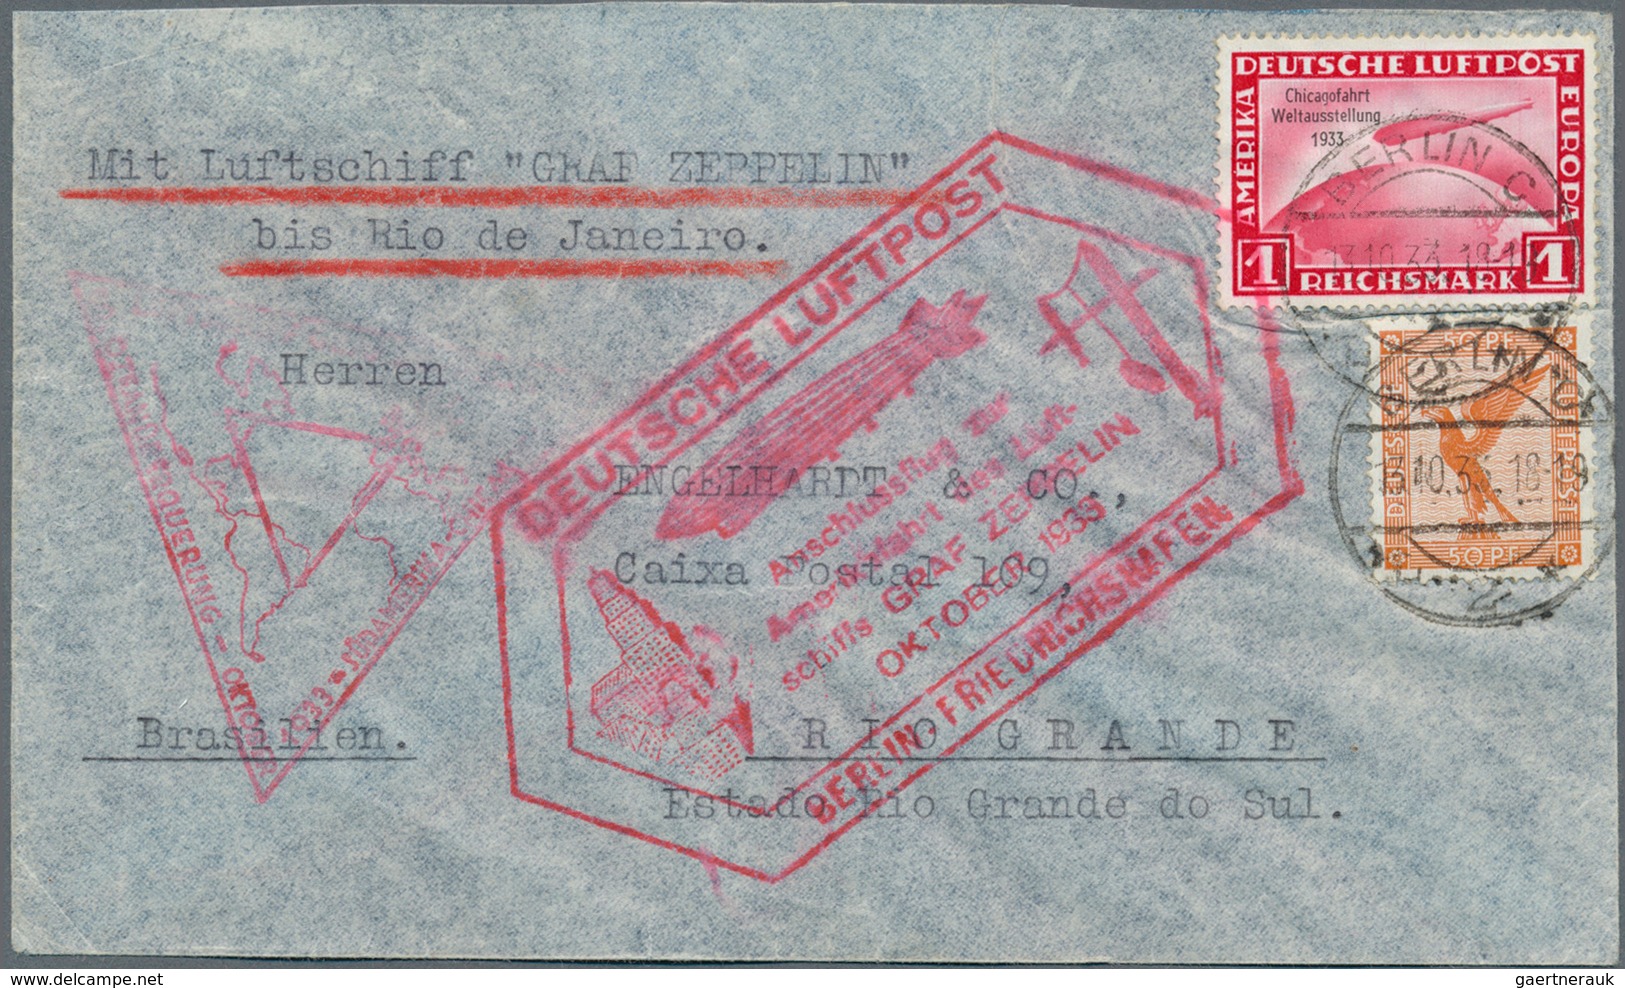 13052 Zeppelinpost Deutschland: 1933: Chicagofahrt: Berlin-Anschluß-Etappenbrief FHFN-RIO, Portorichtig Mi - Luft- Und Zeppelinpost